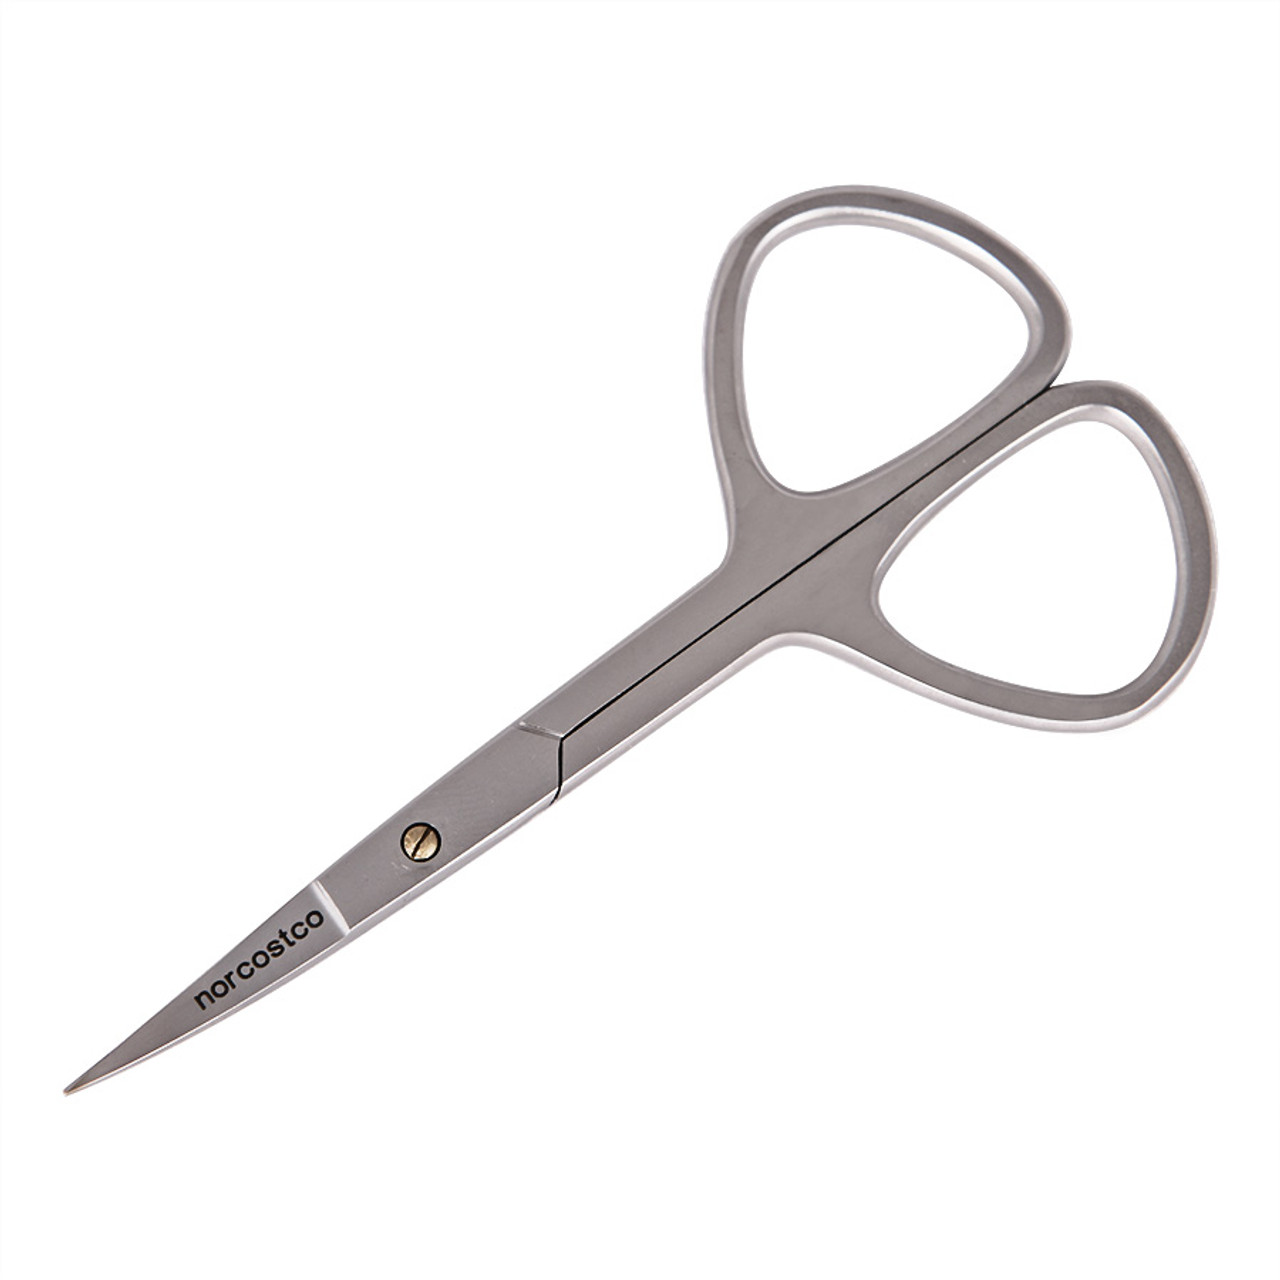 Norcostco Curved Cuticle Scissors - Norcostco, Inc.